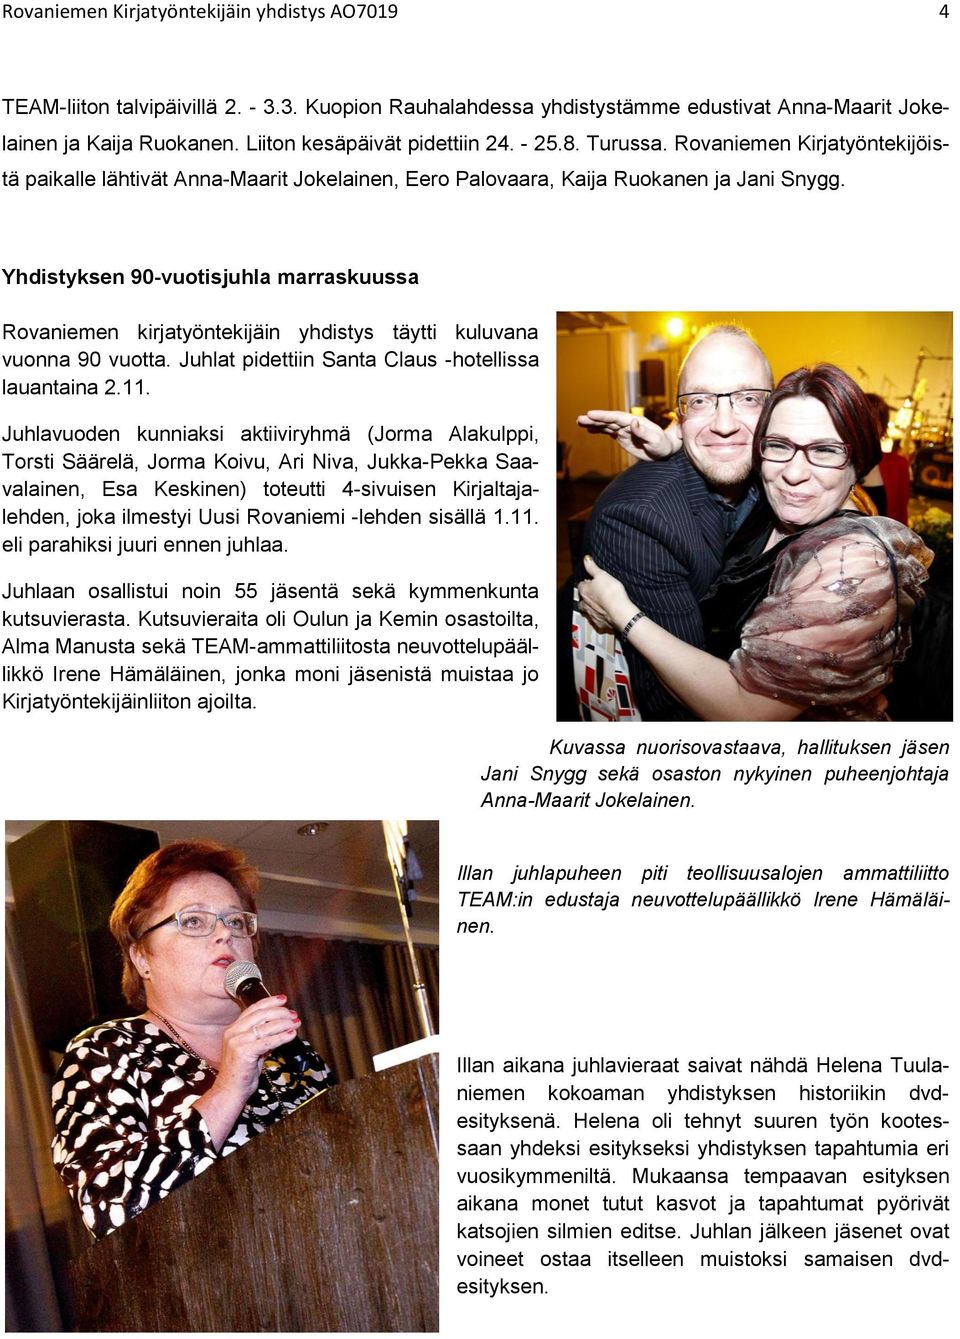 Yhdistyksen 90-vuotisjuhla marraskuussa Rovaniemen kirjatyöntekijäin yhdistys täytti kuluvana vuonna 90 vuotta. Juhlat pidettiin Santa Claus -hotellissa lauantaina 2.11.